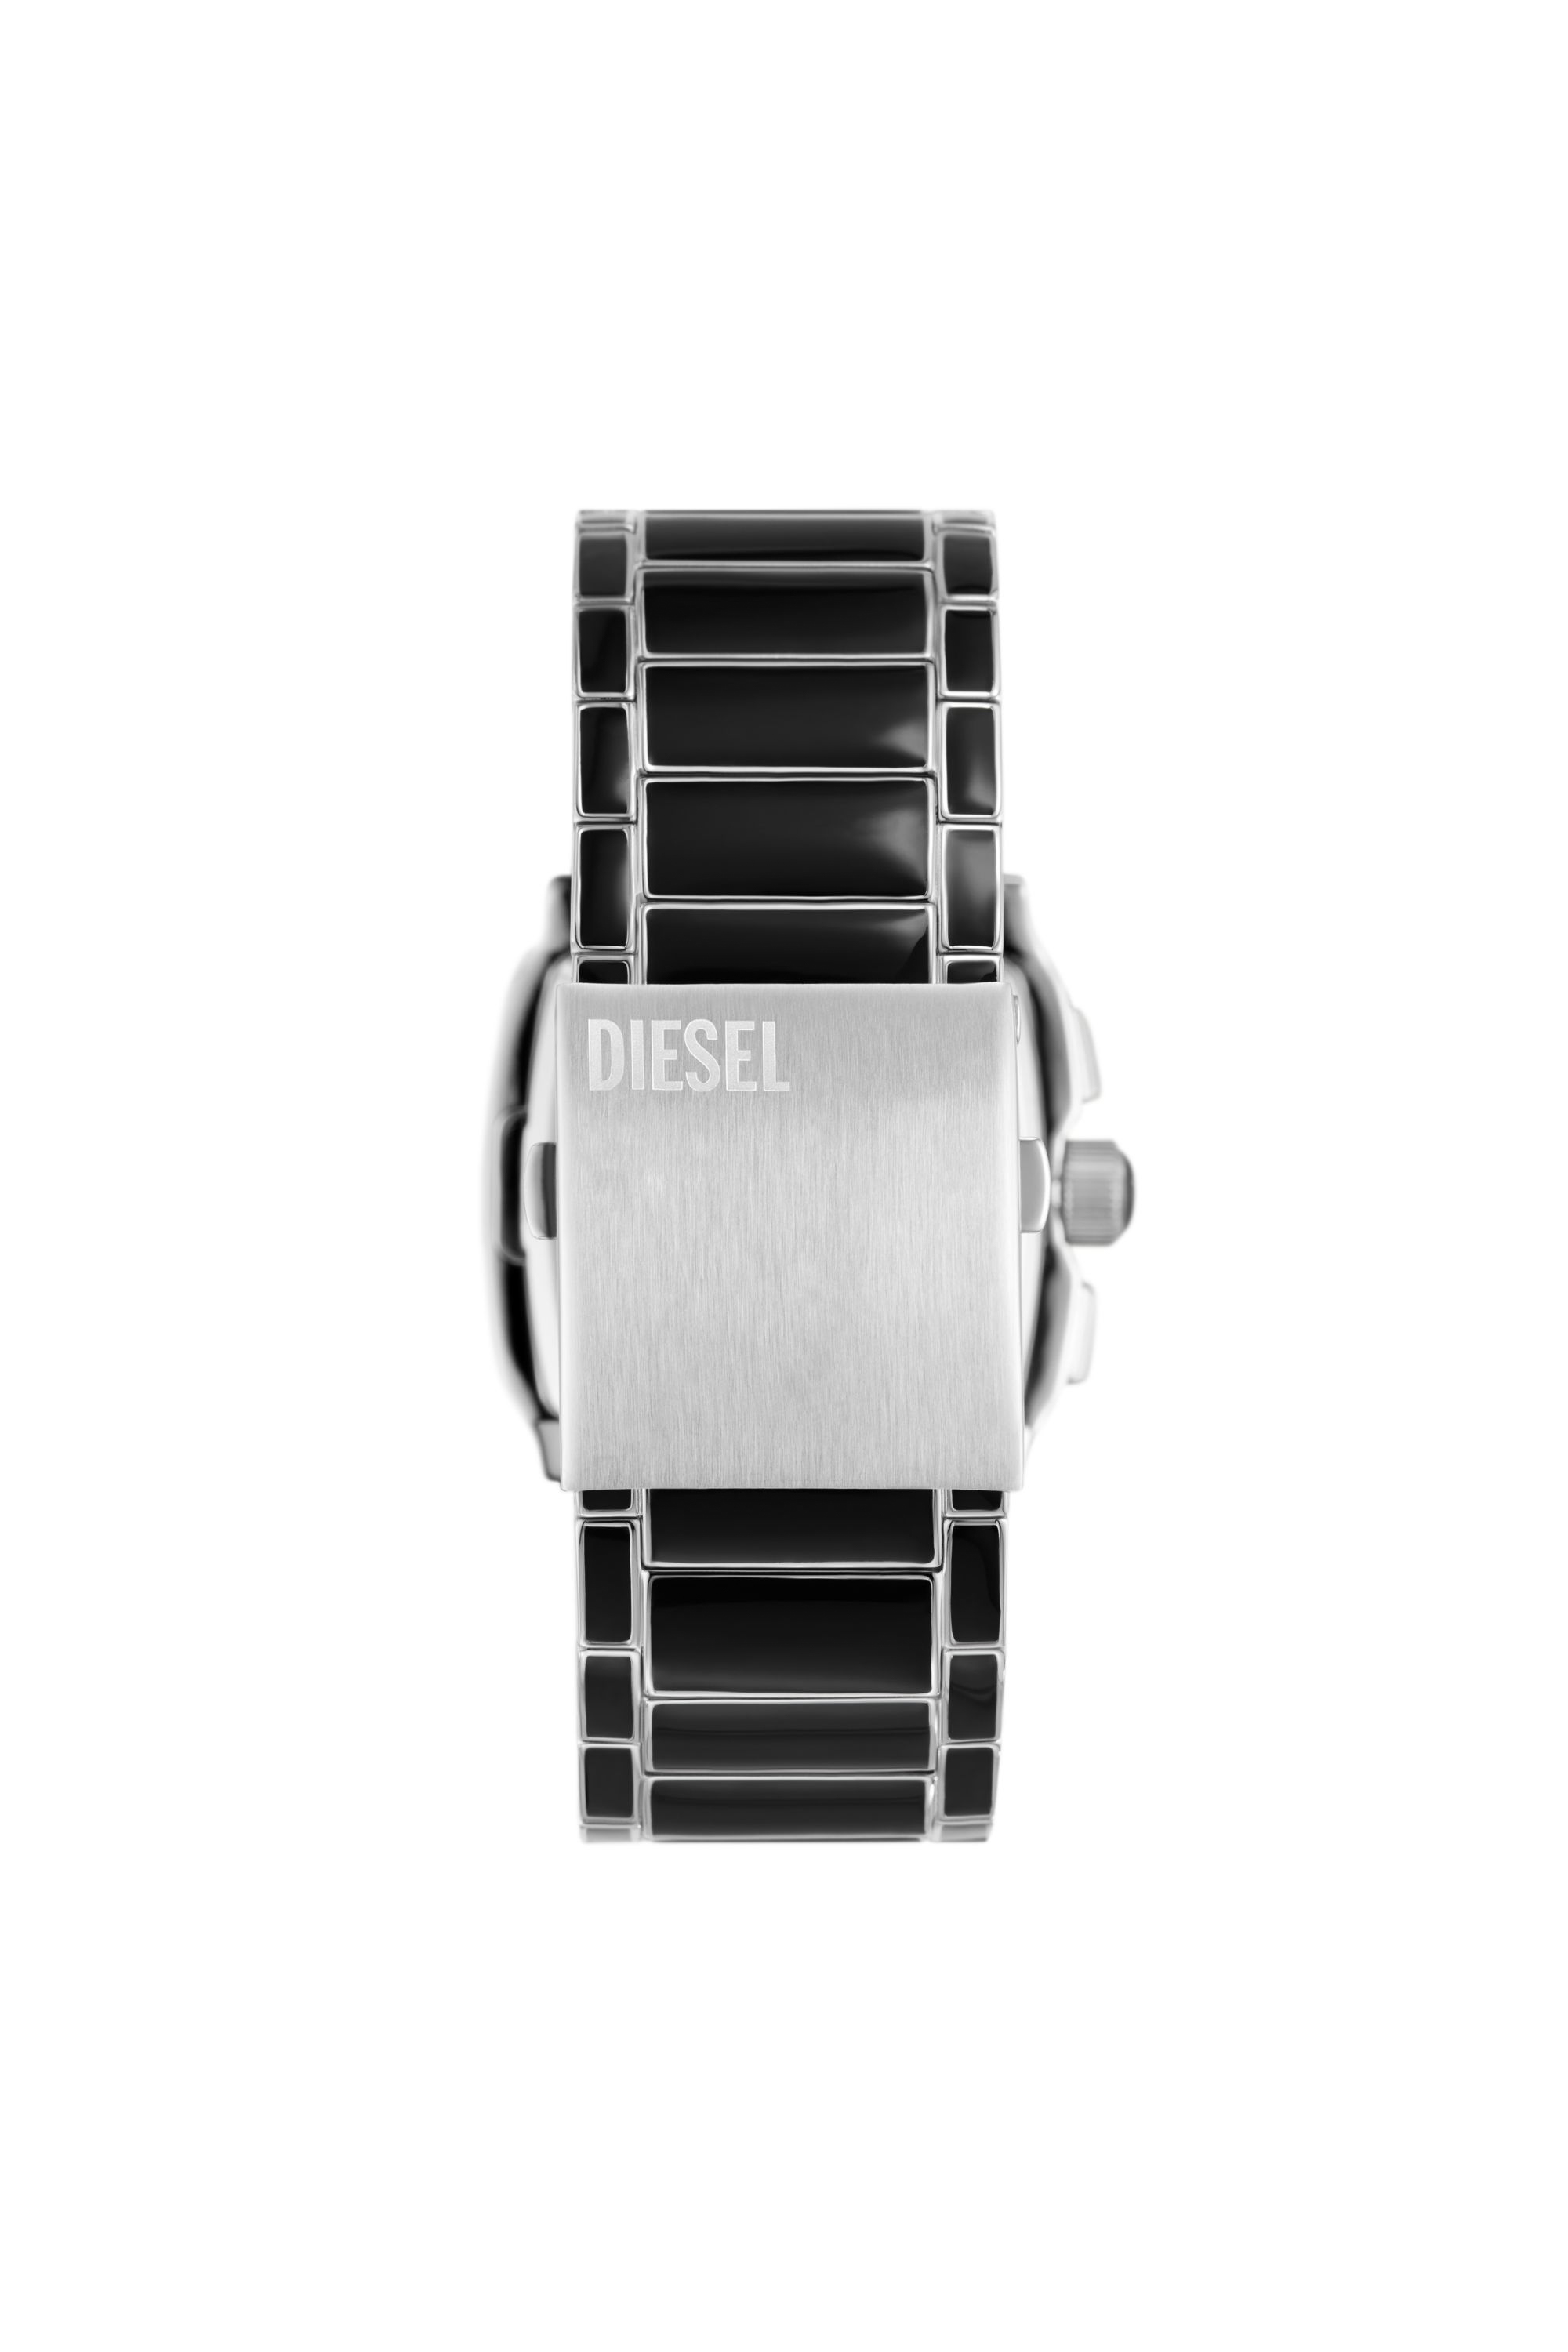 Diesel - DZ4646, Man Cliffhanger black enamel and stainless steel watch in Black - Image 2